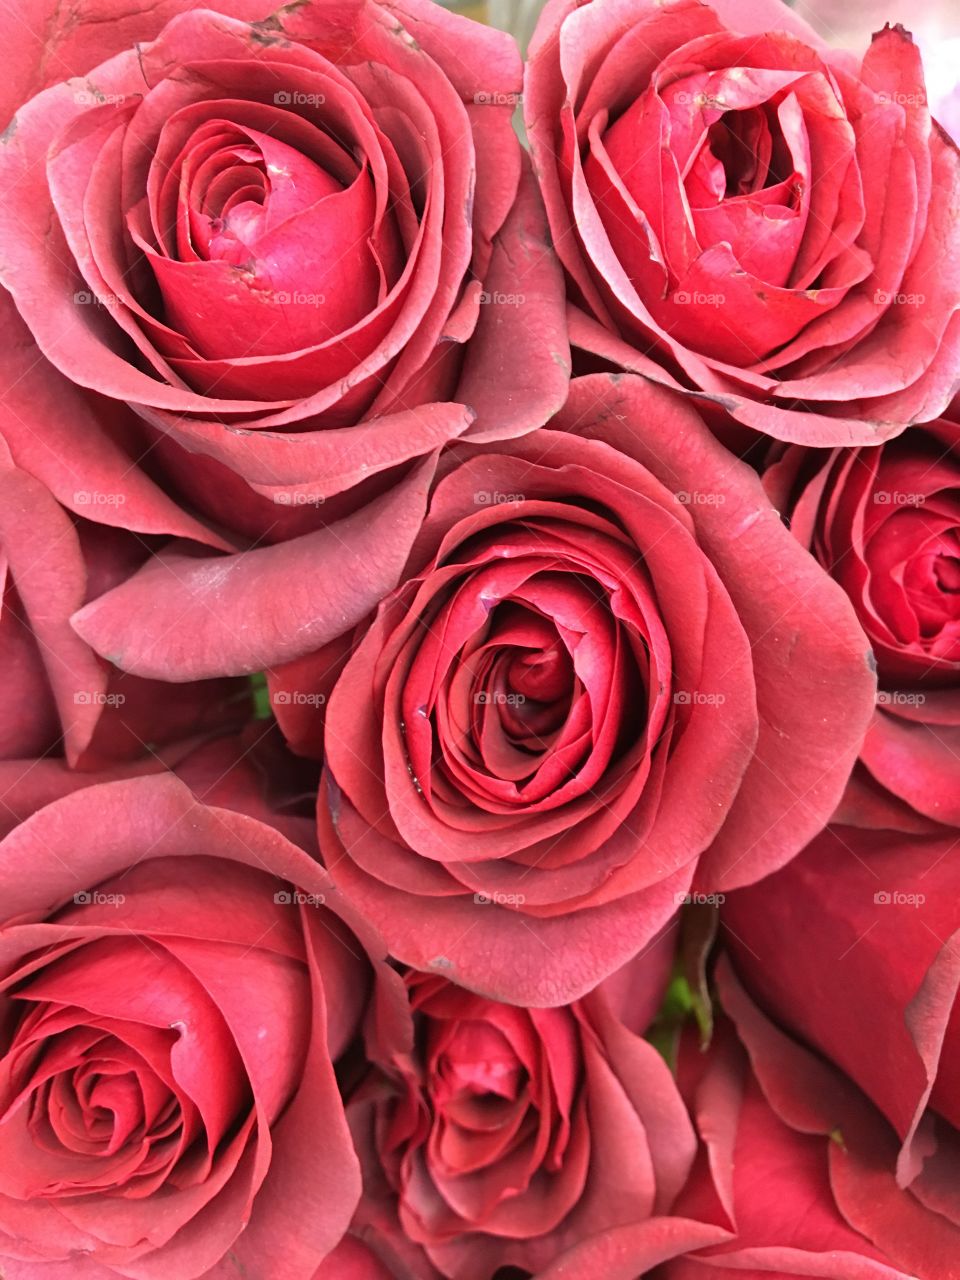 Vintage red roses 